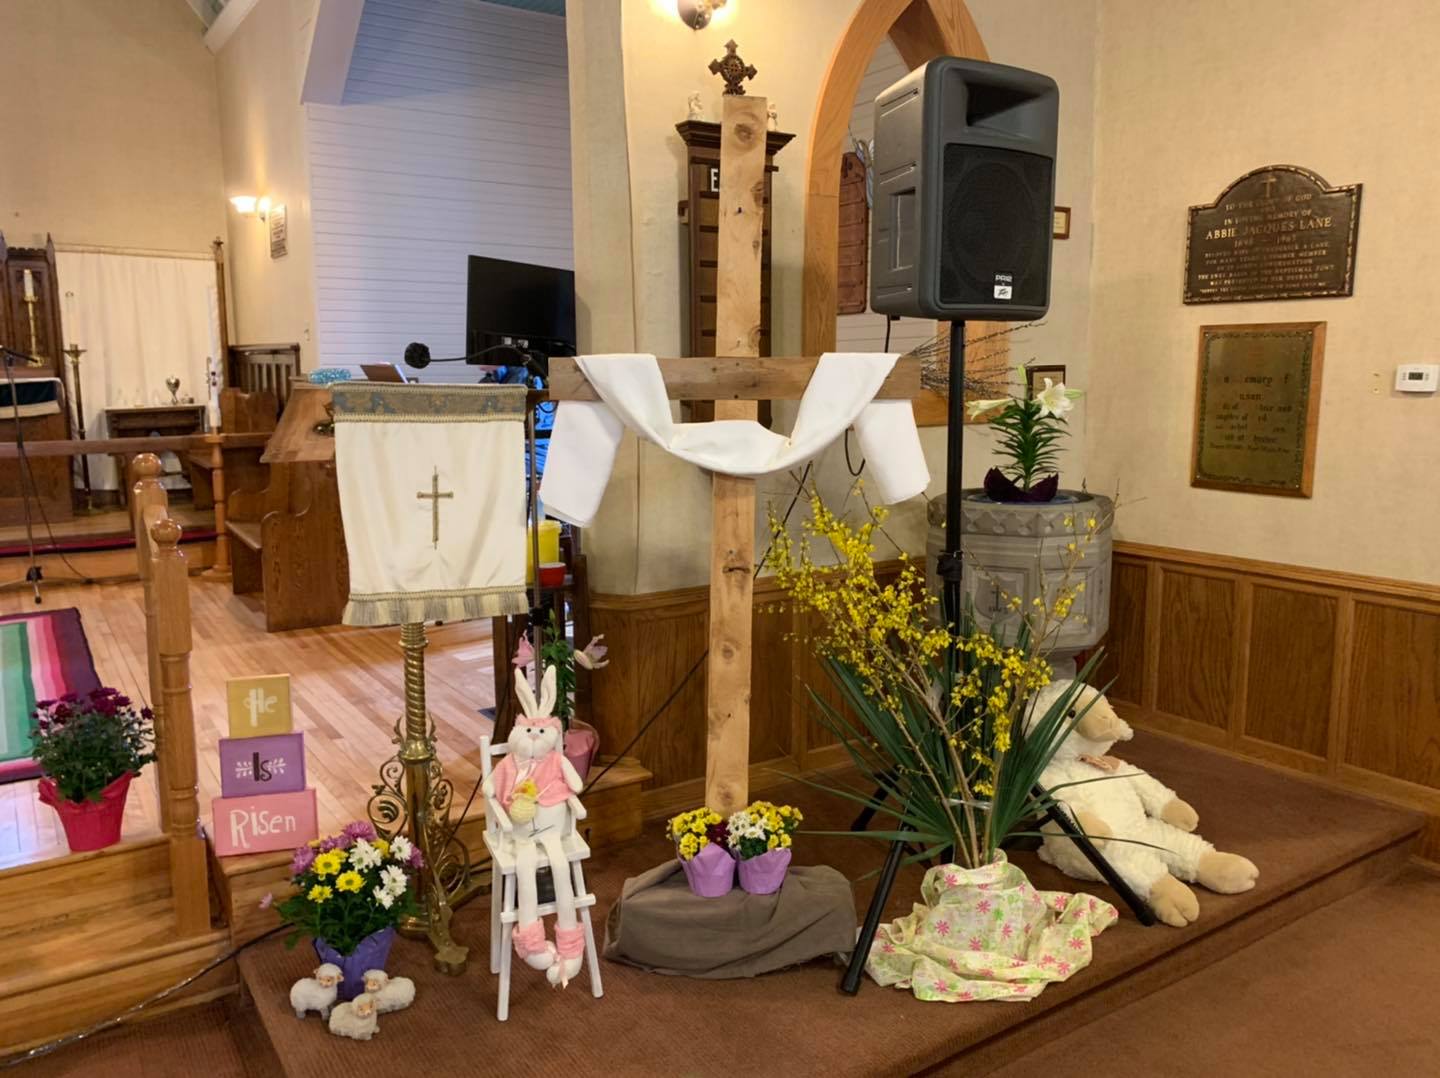 Easter Sunday at St. Luke's, April 4th, 2021